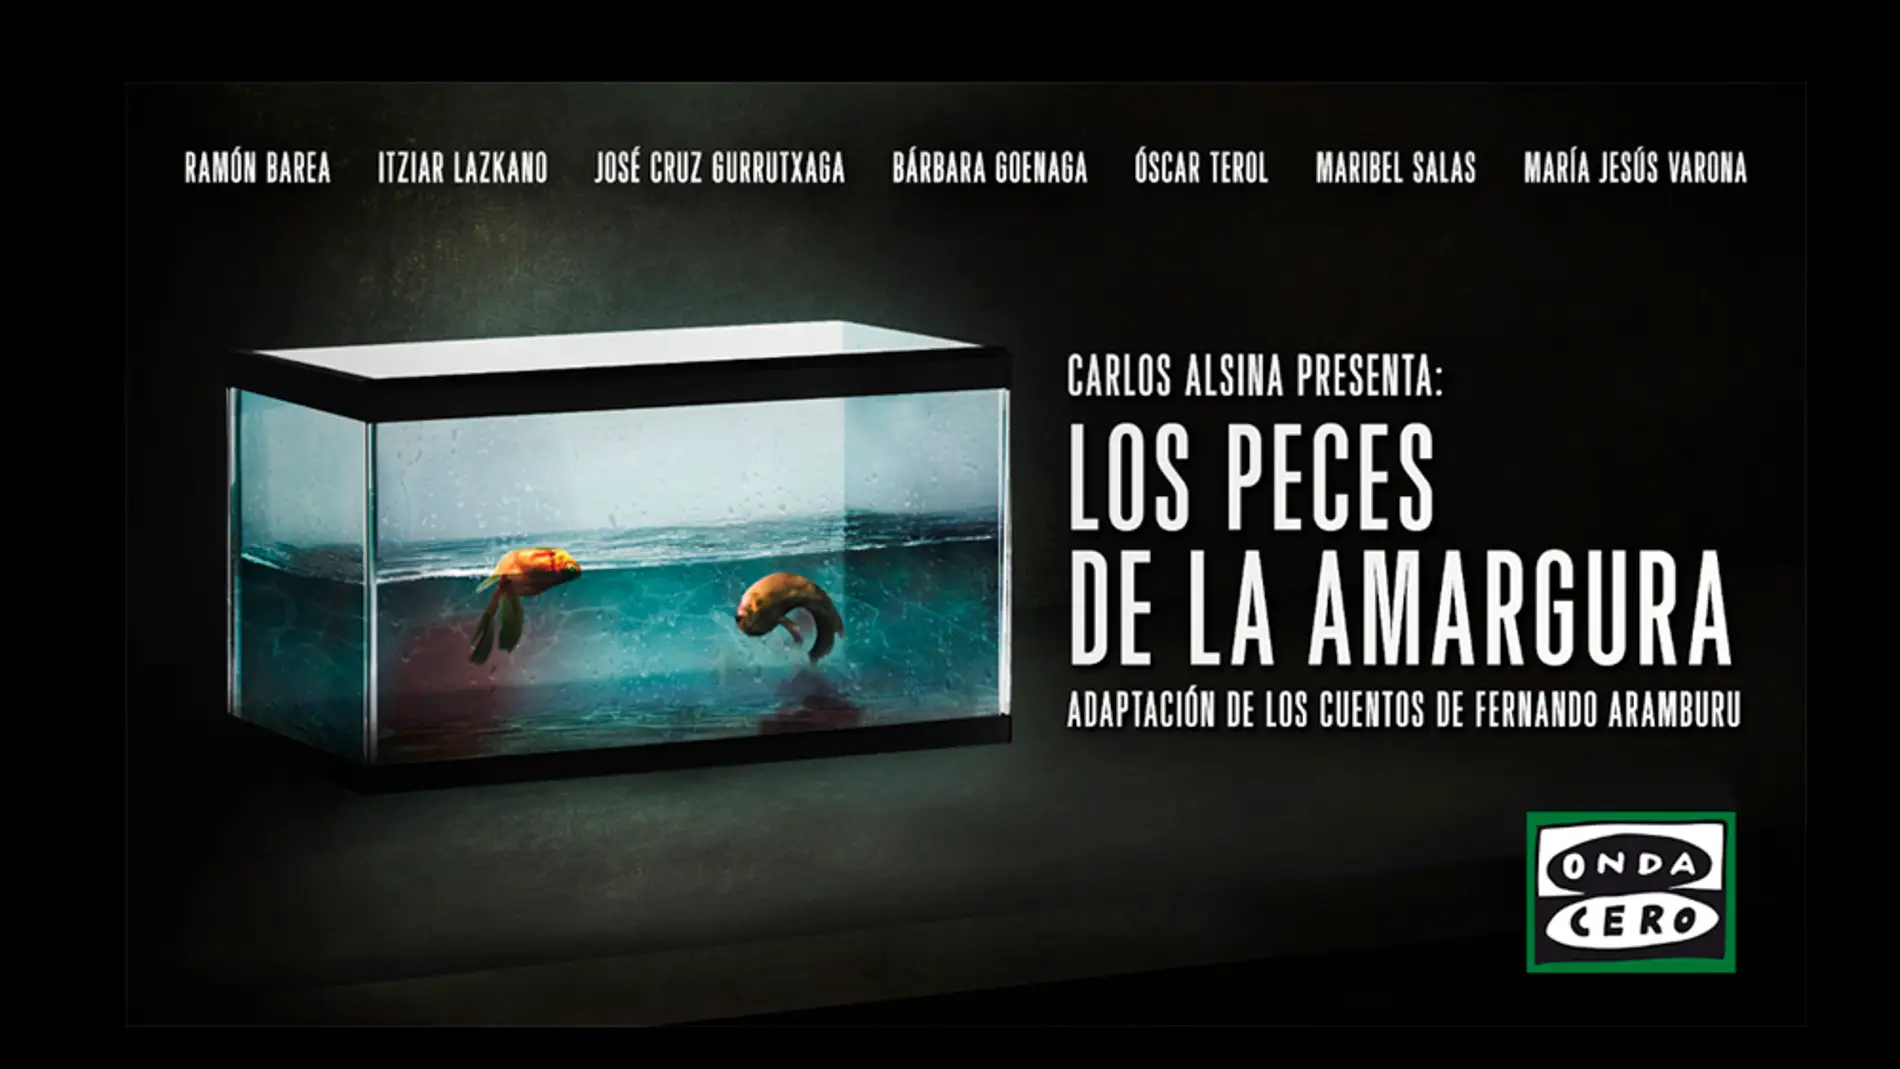 Carlos Alsina emite en Más de uno la adaptación radiofónica de 'Los peces de la amargura', los relatos de Fernando Aramburu